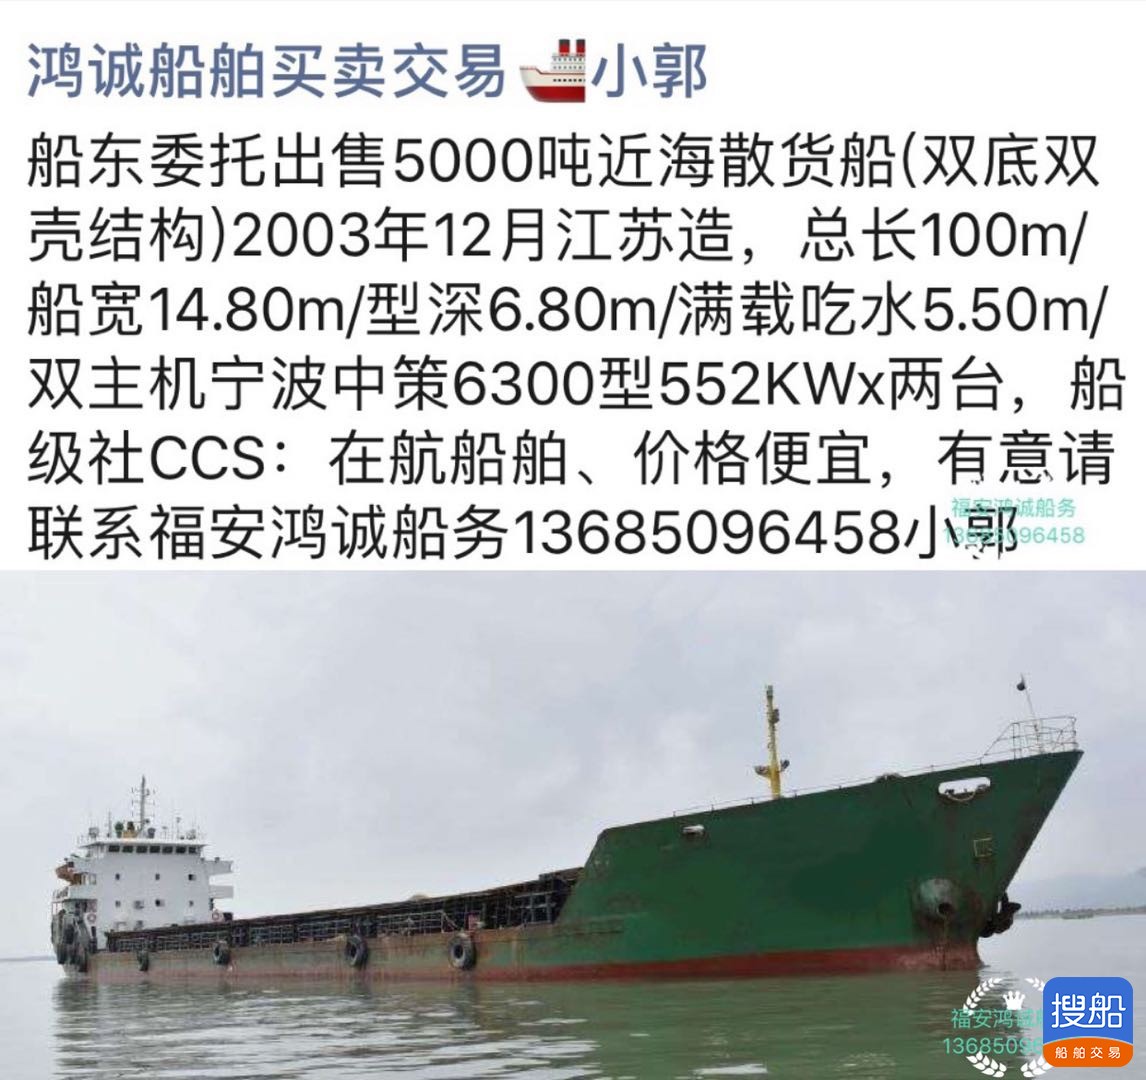 低价出售5000吨双壳散货船